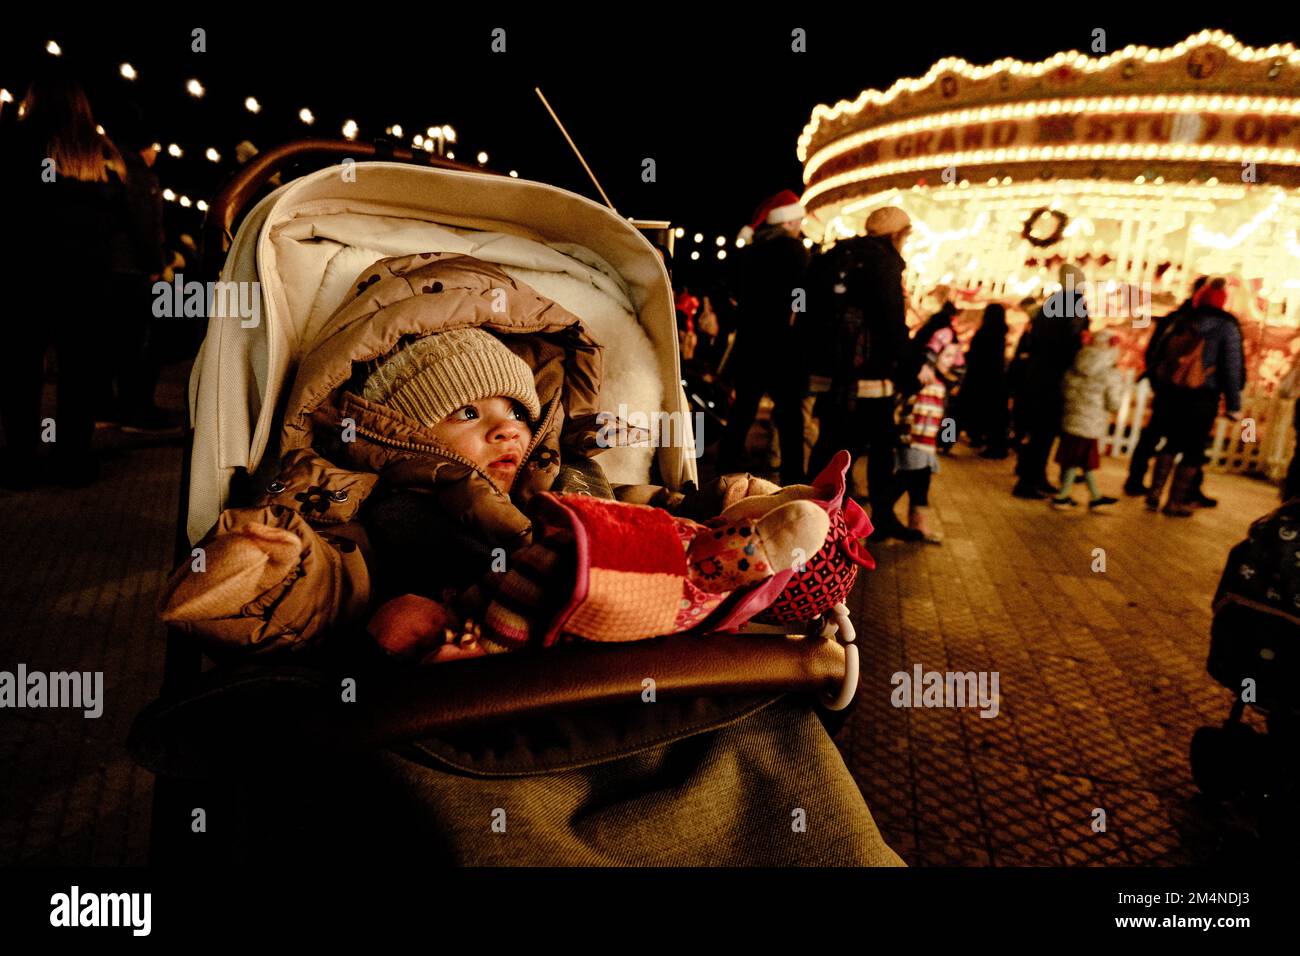 Ein Baby sieht auf einem Rummel zu, mit einem Riesenrad hinter ihr. Stockfoto